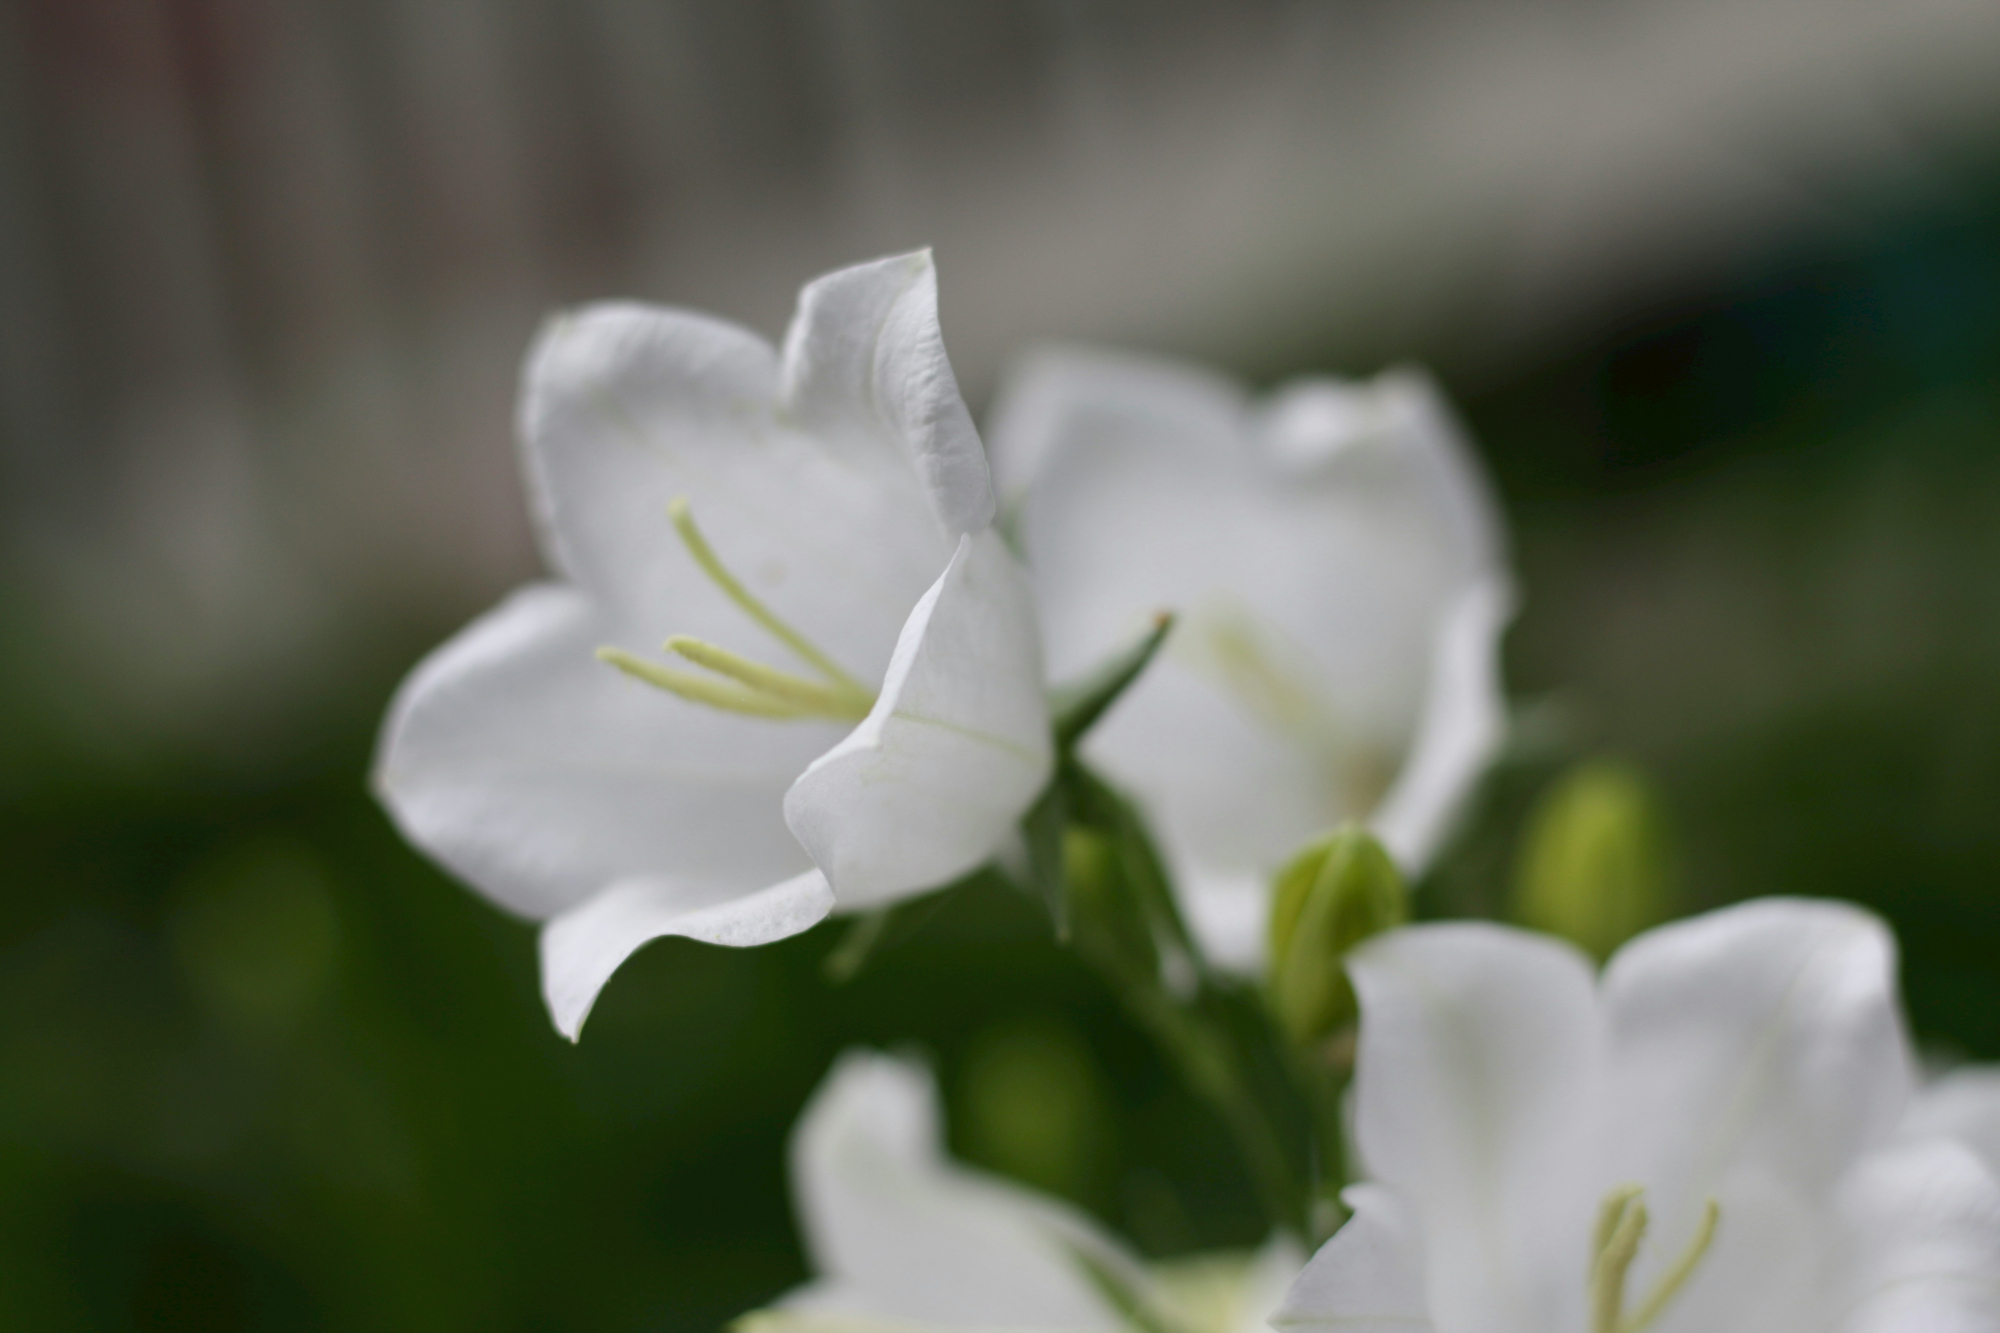 découvrez tout sur les campanules, ces jolies fleurs herbacées à clochettes, ainsi que des conseils de plantation et d'entretien pour embellir votre jardin.